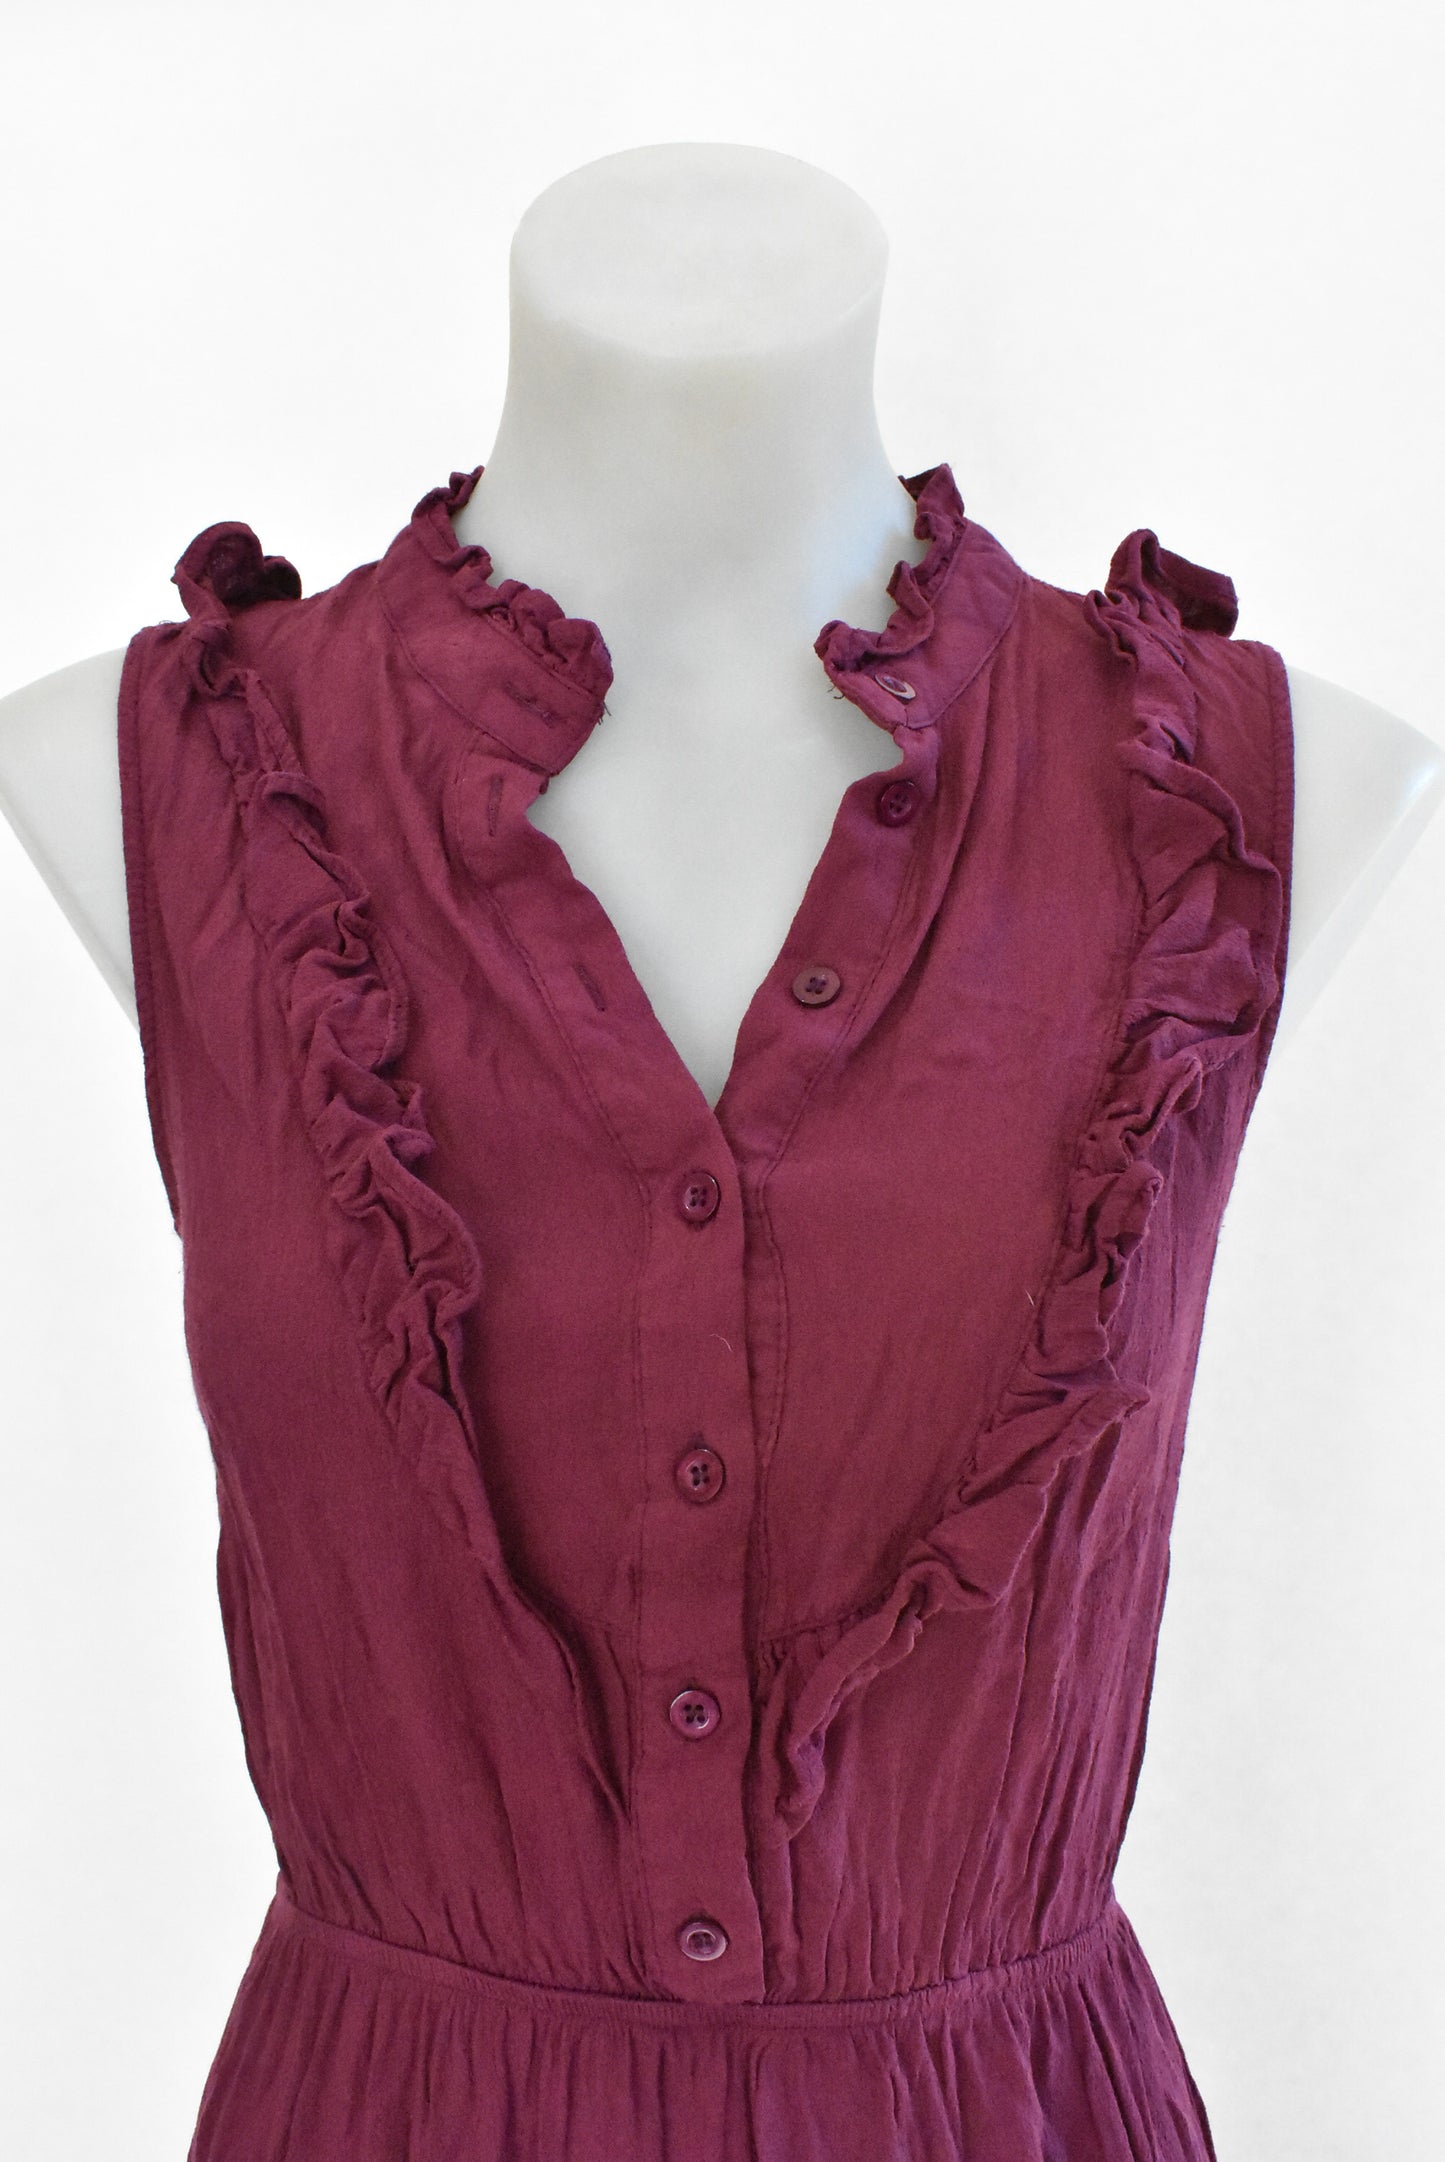 Oscar-St burgundy dress, M